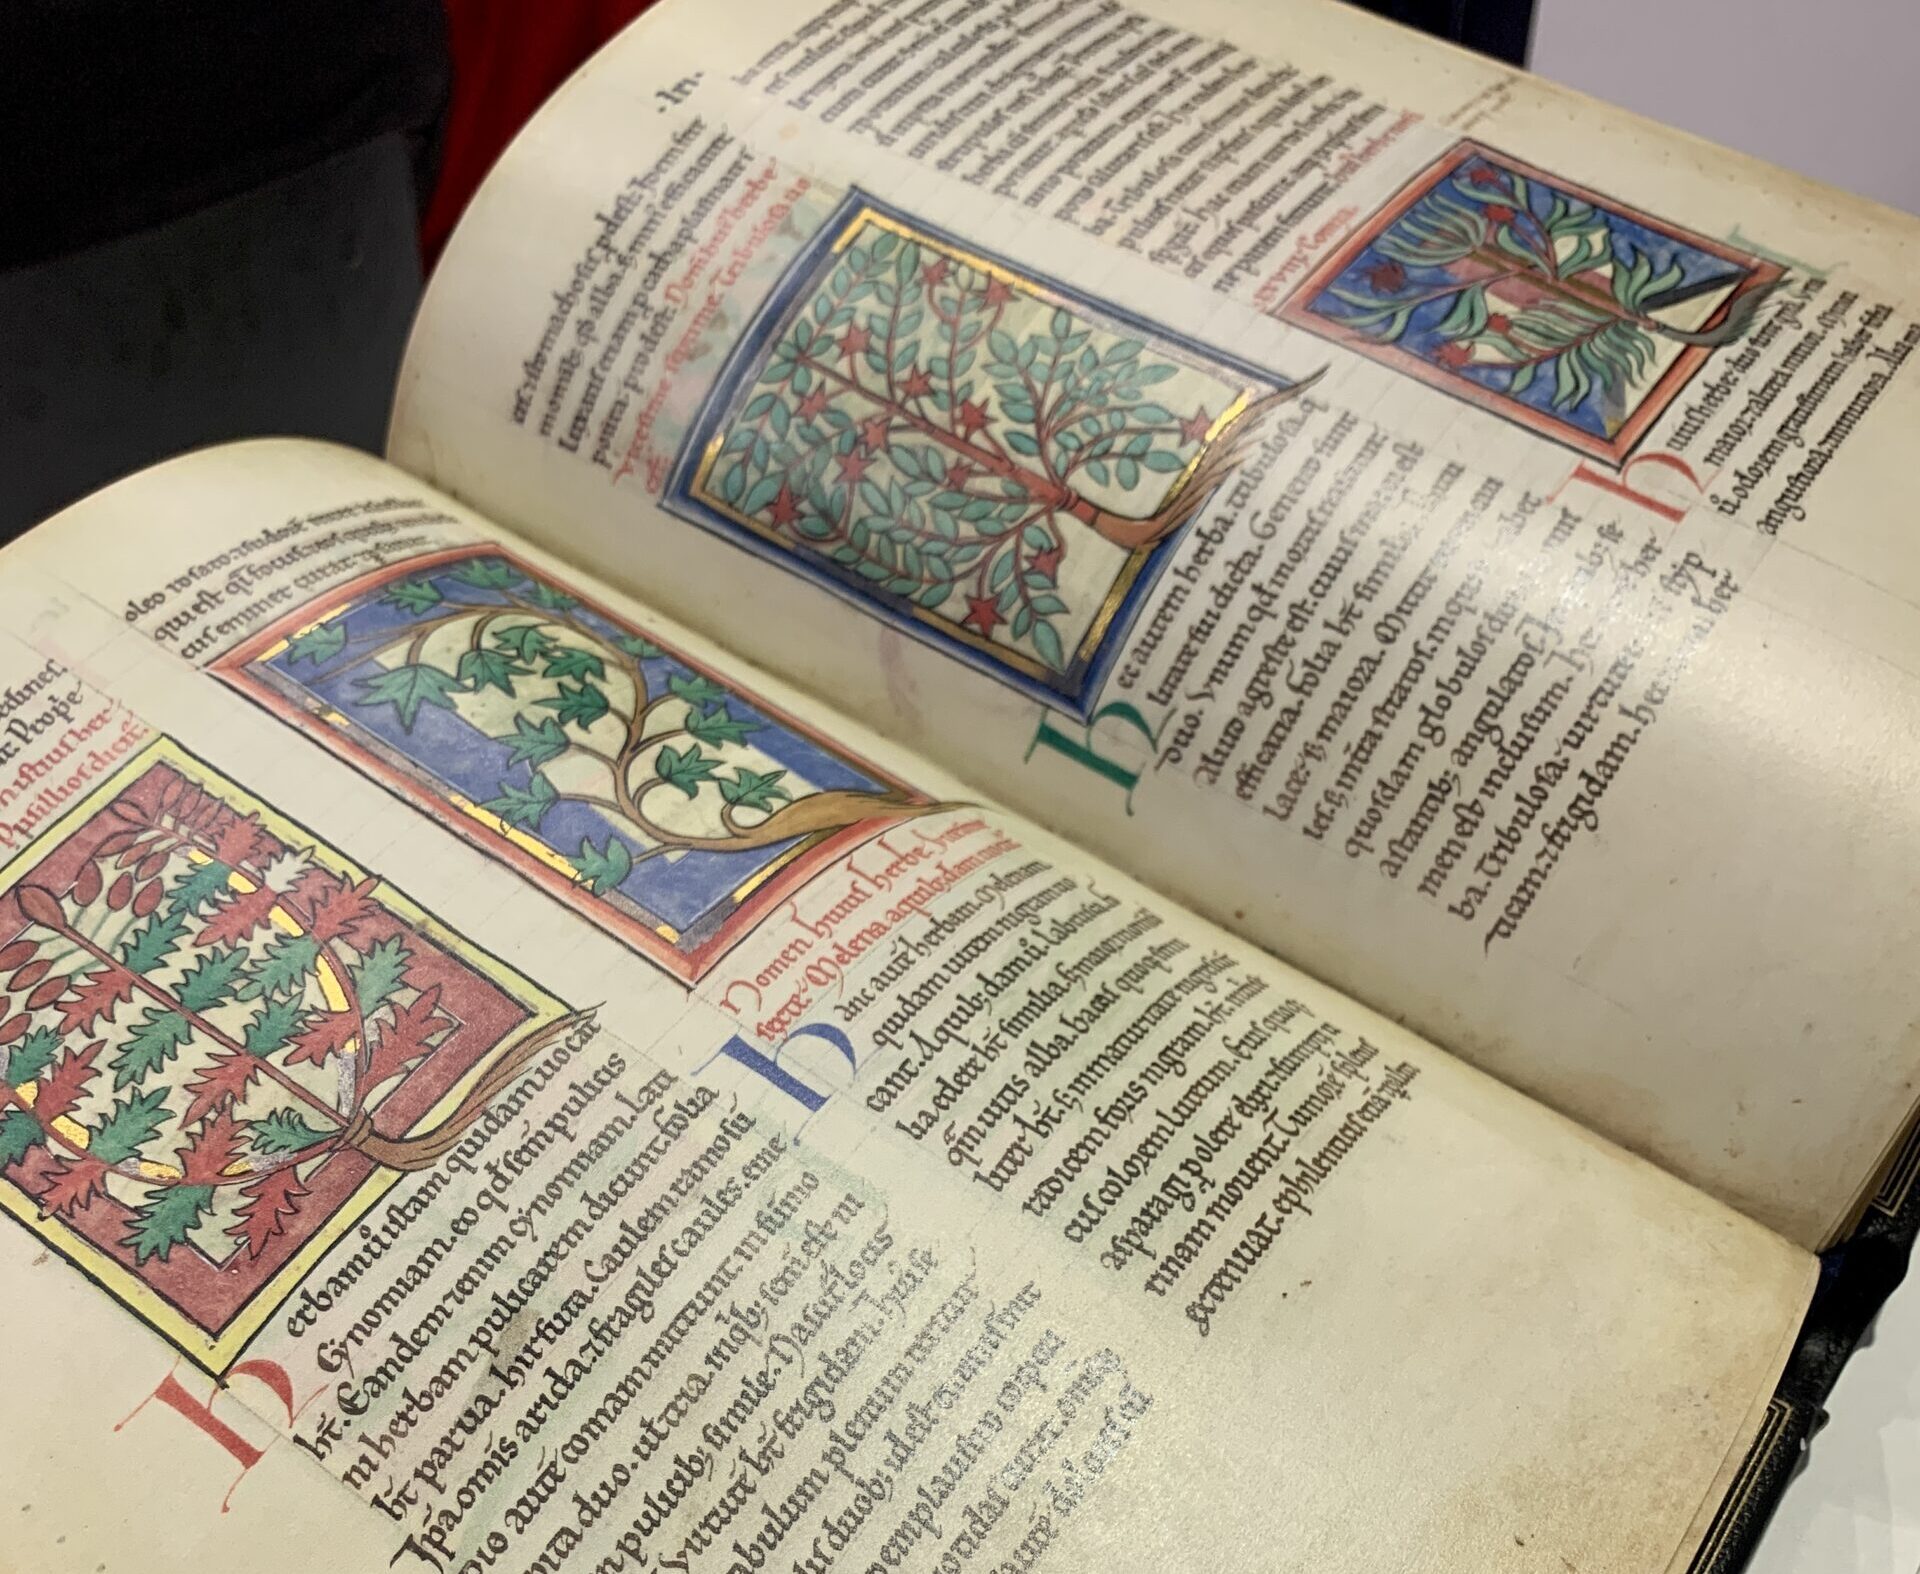 Aufgeschlagene Fakisimile-Edition "Von Pflanzen und Tieren - ein mittelalterliches Hausbuch". Die Seite zeigt vier kleinere Miniaturen, in denen Pflanzen abgebildet sind. Darunter sind diese Heilkräuter auf Latein erläutert.